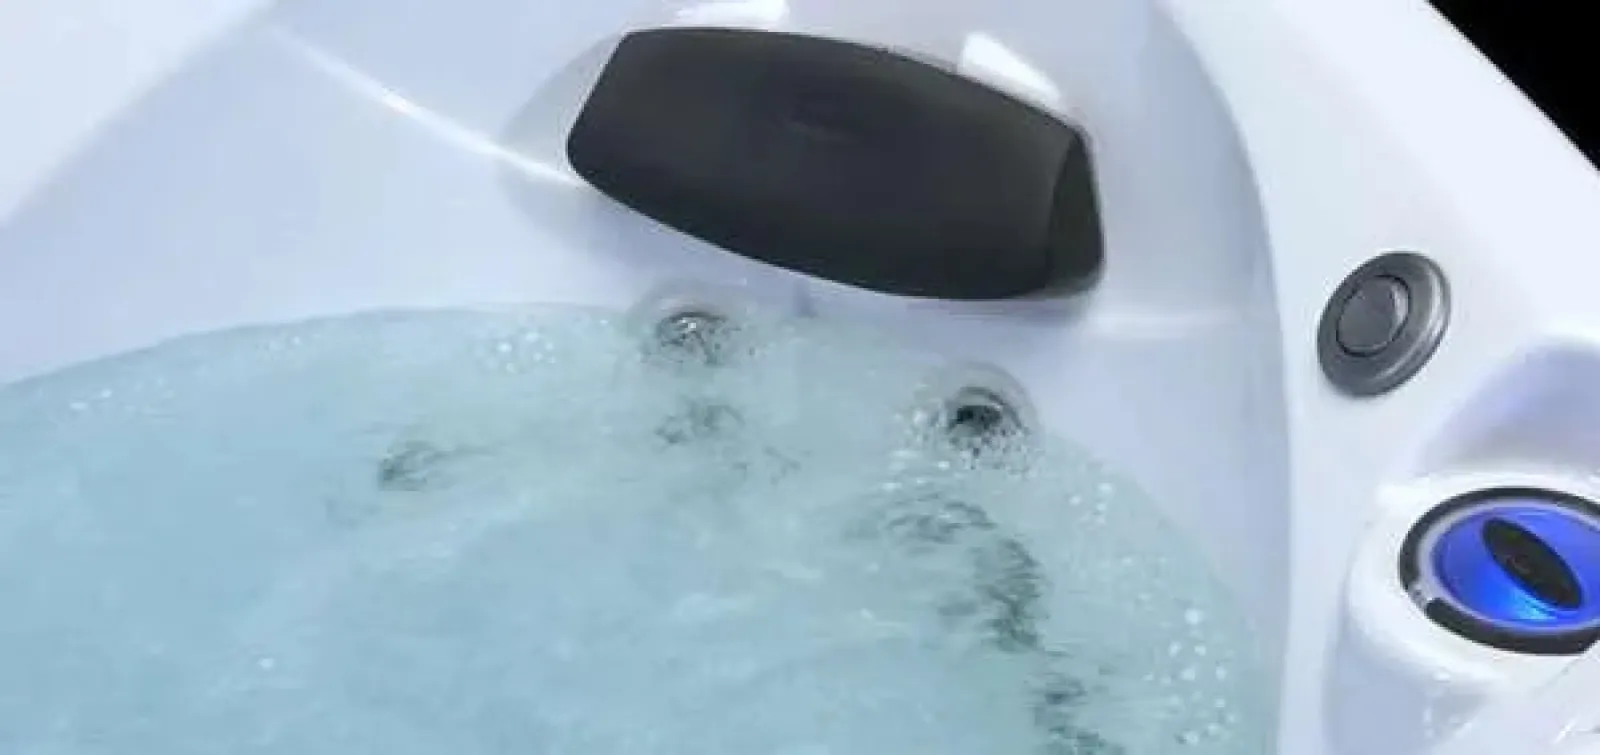 a close-up of a hot tub